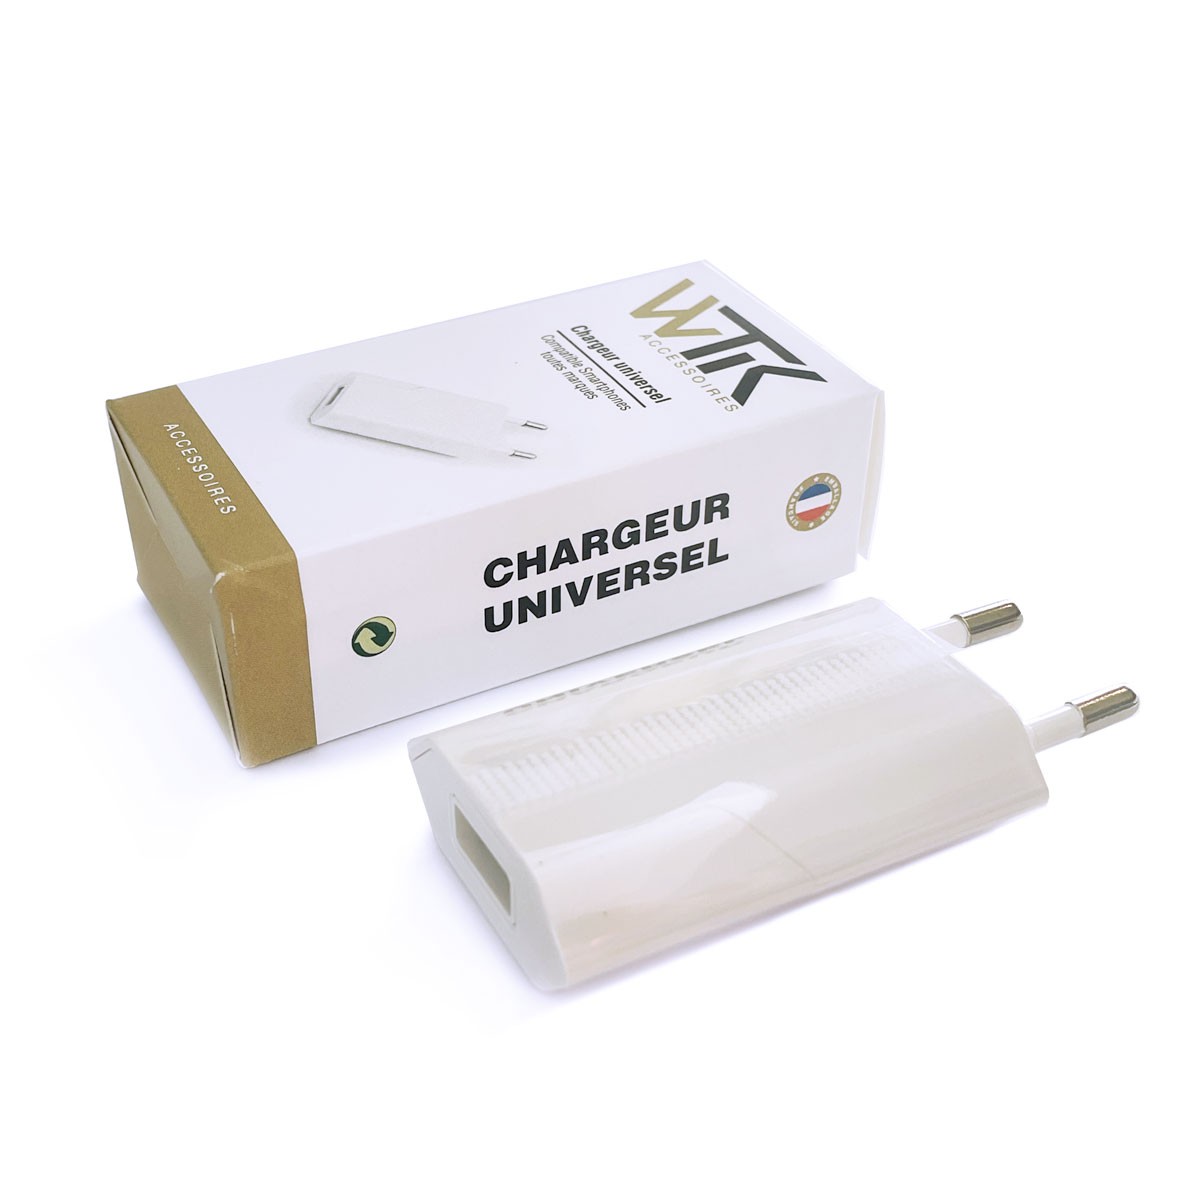 Chargeur secteur USB 1A